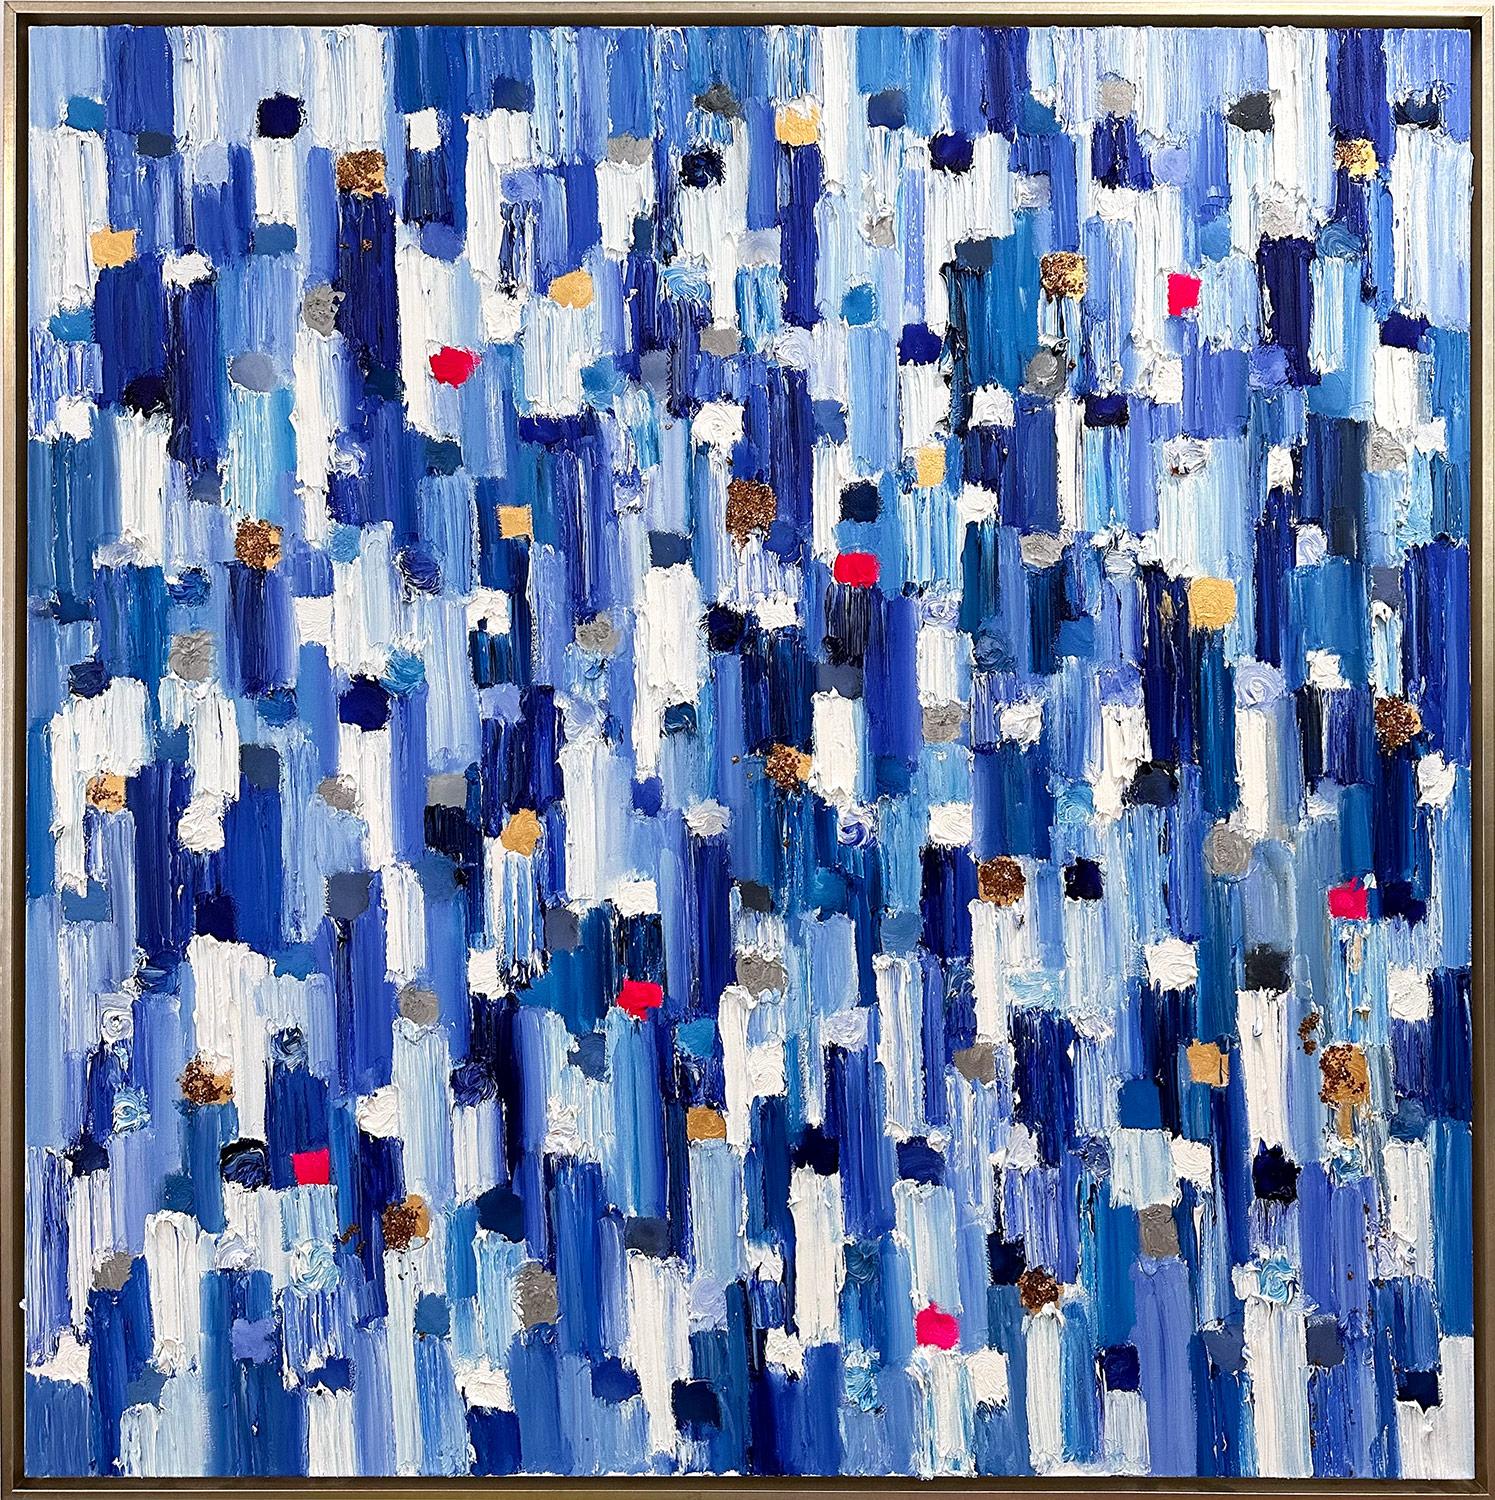 Abstract Painting Cindy Shaoul - "Dripping Dots - Monaco" Peinture à l'huile contemporaine multicolore sur toile encadrée